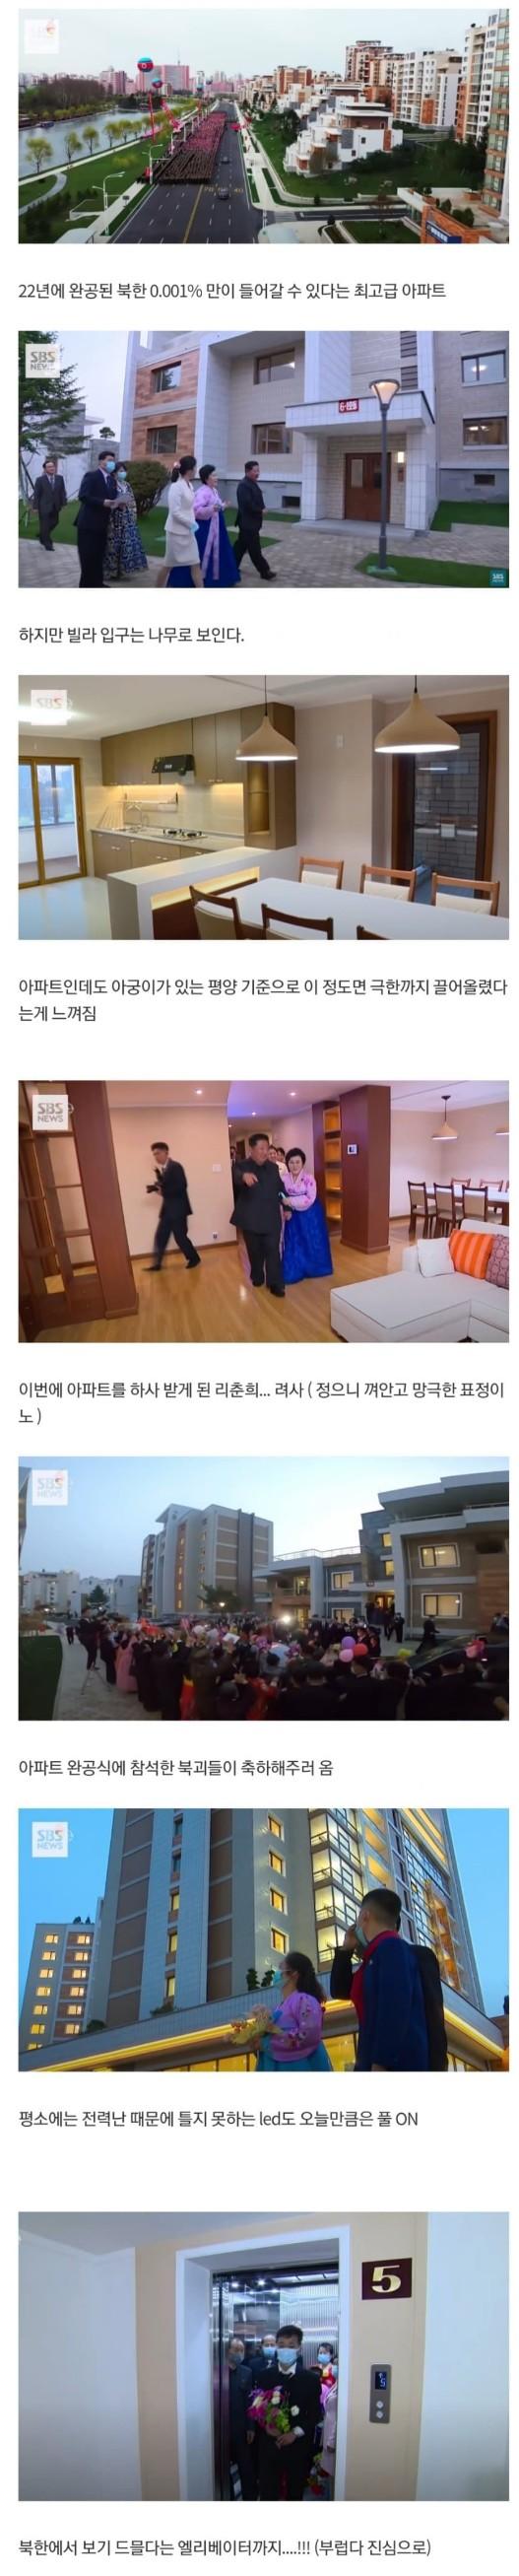 싱글벙글 22년에 지어진 북한 최고급 아파트 모습.jpg